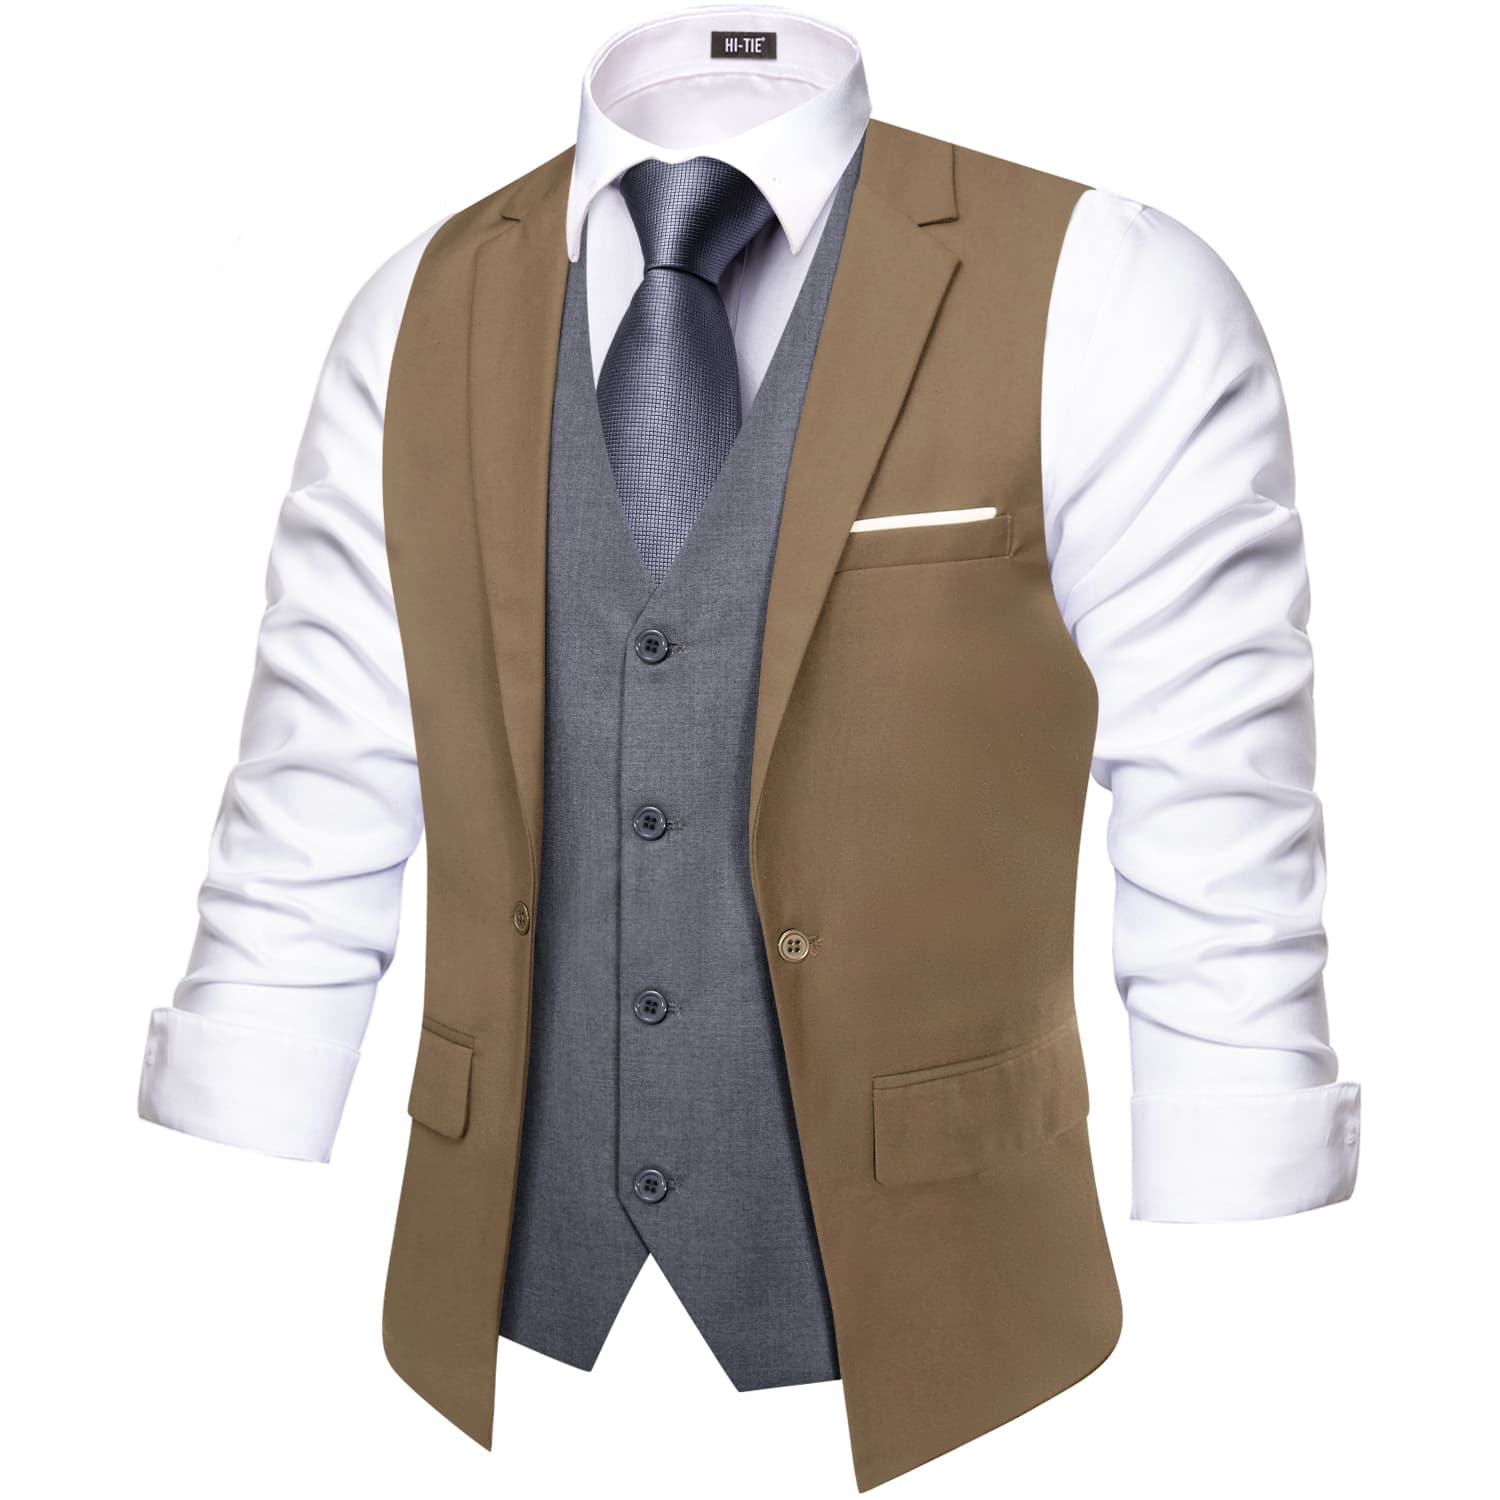 Hi-Tie Suit Vest Layered Waistcoat Camel Brown Gray Vests for Wedding